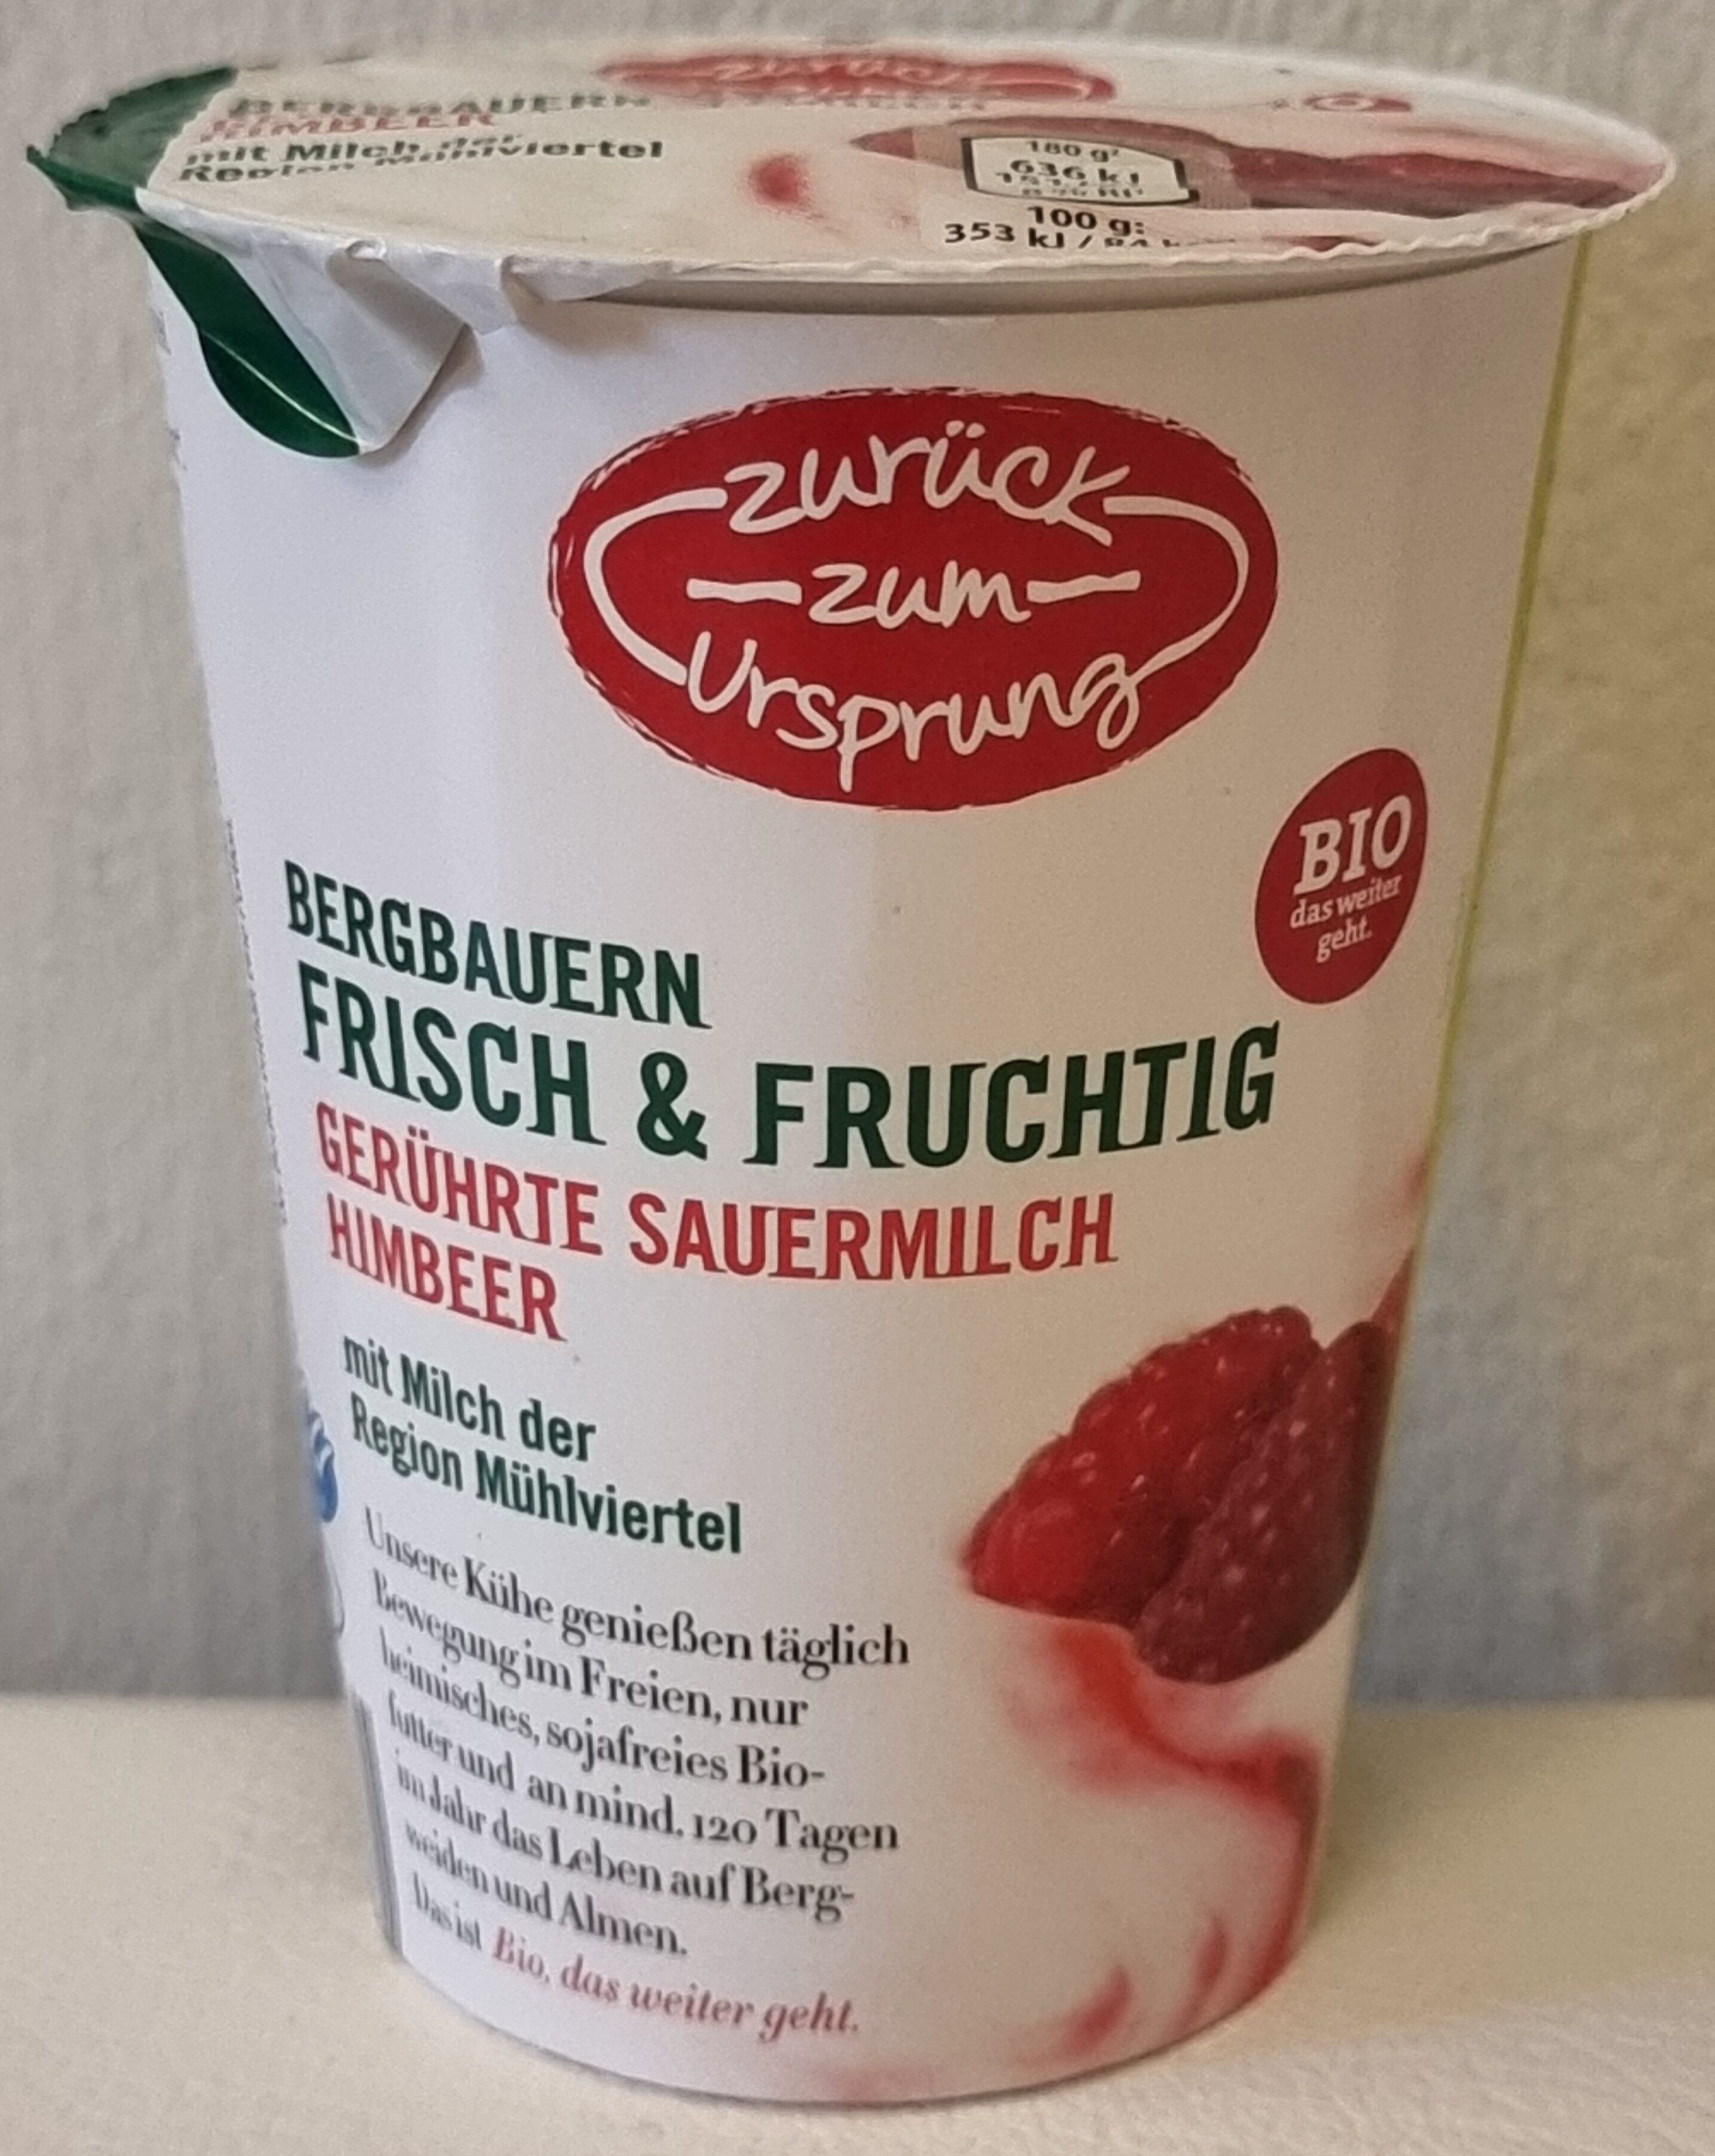 Gerührte Sauermilch Himbeer - Produkt